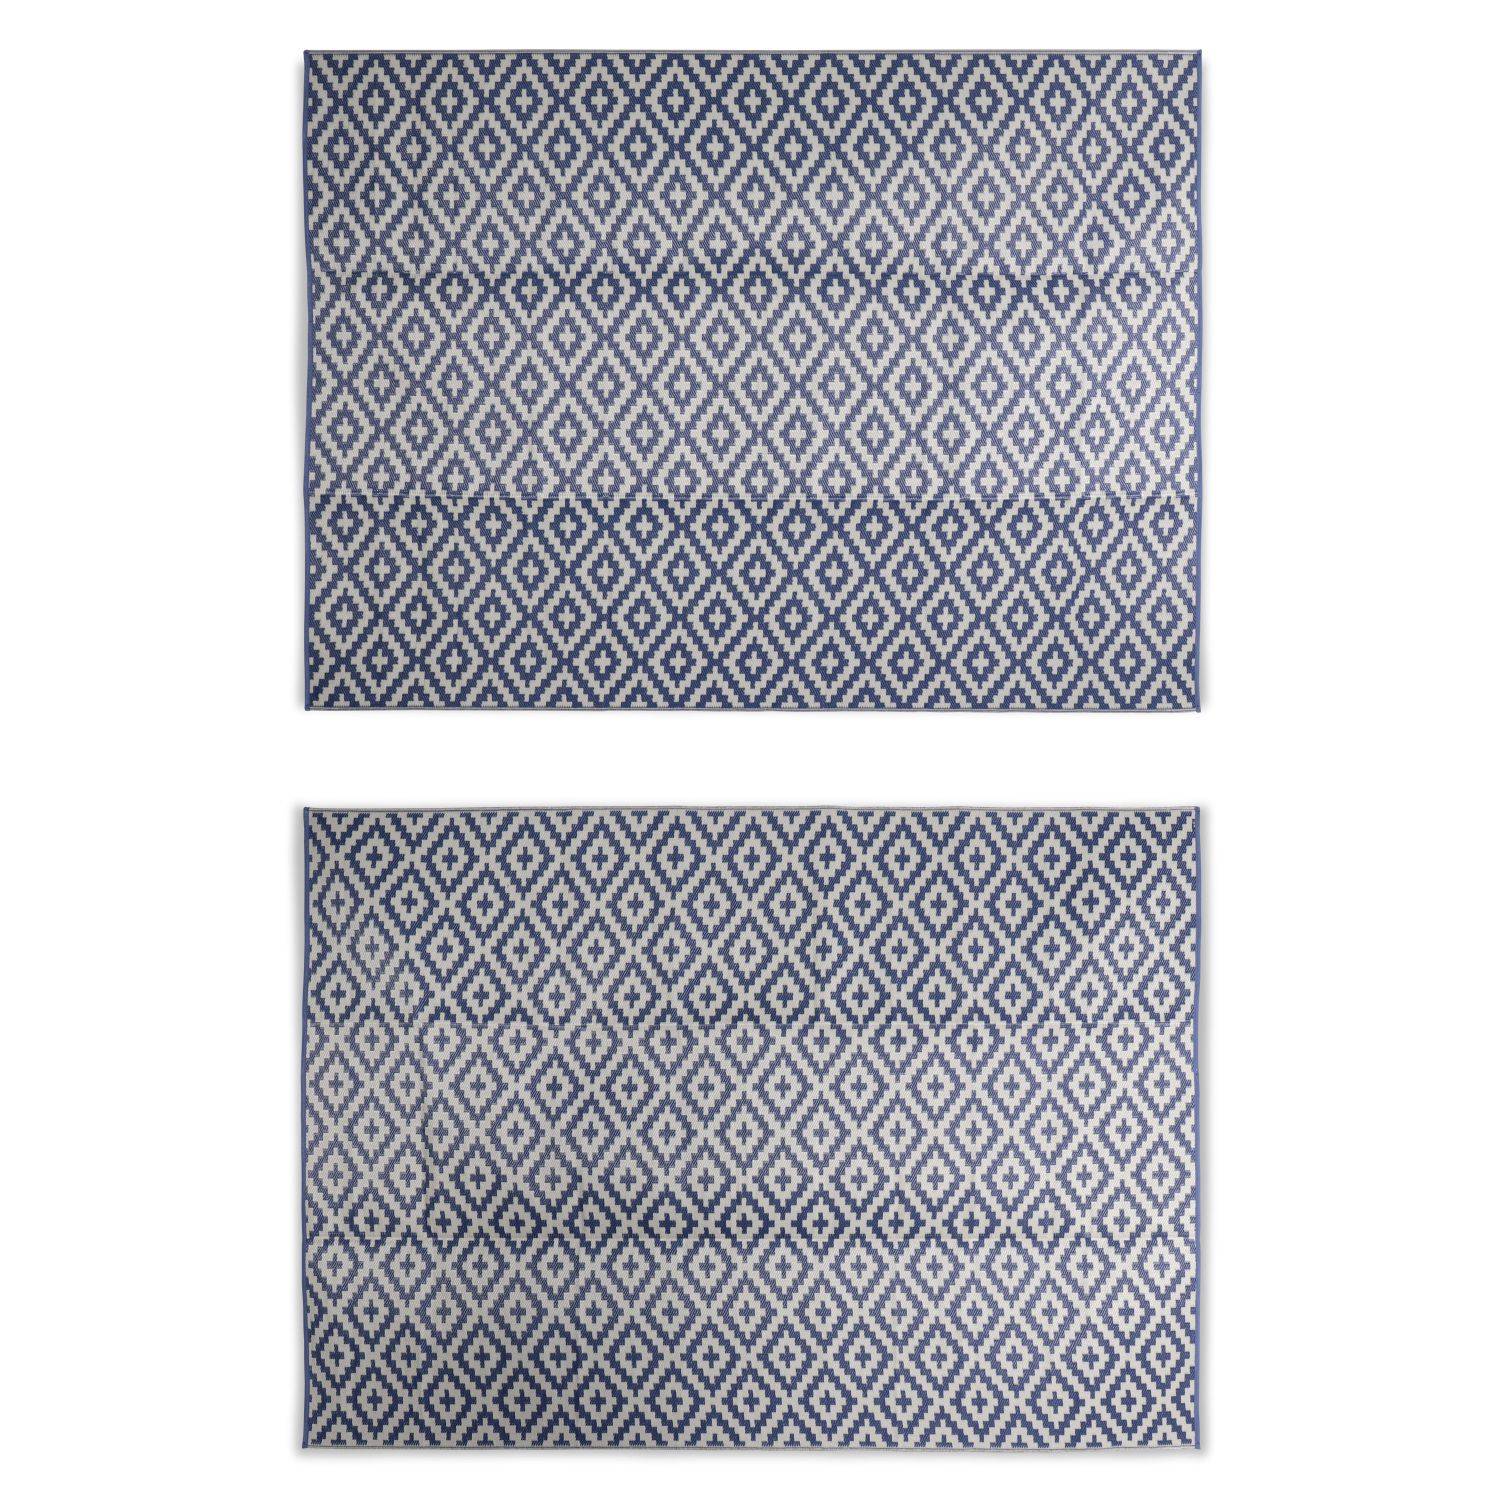 Tapete exterior 270x360cm STOCKHOLM - Rectangular, padrão diamante azul / bege, jacquard, reversível, interior / exterior, Photo2